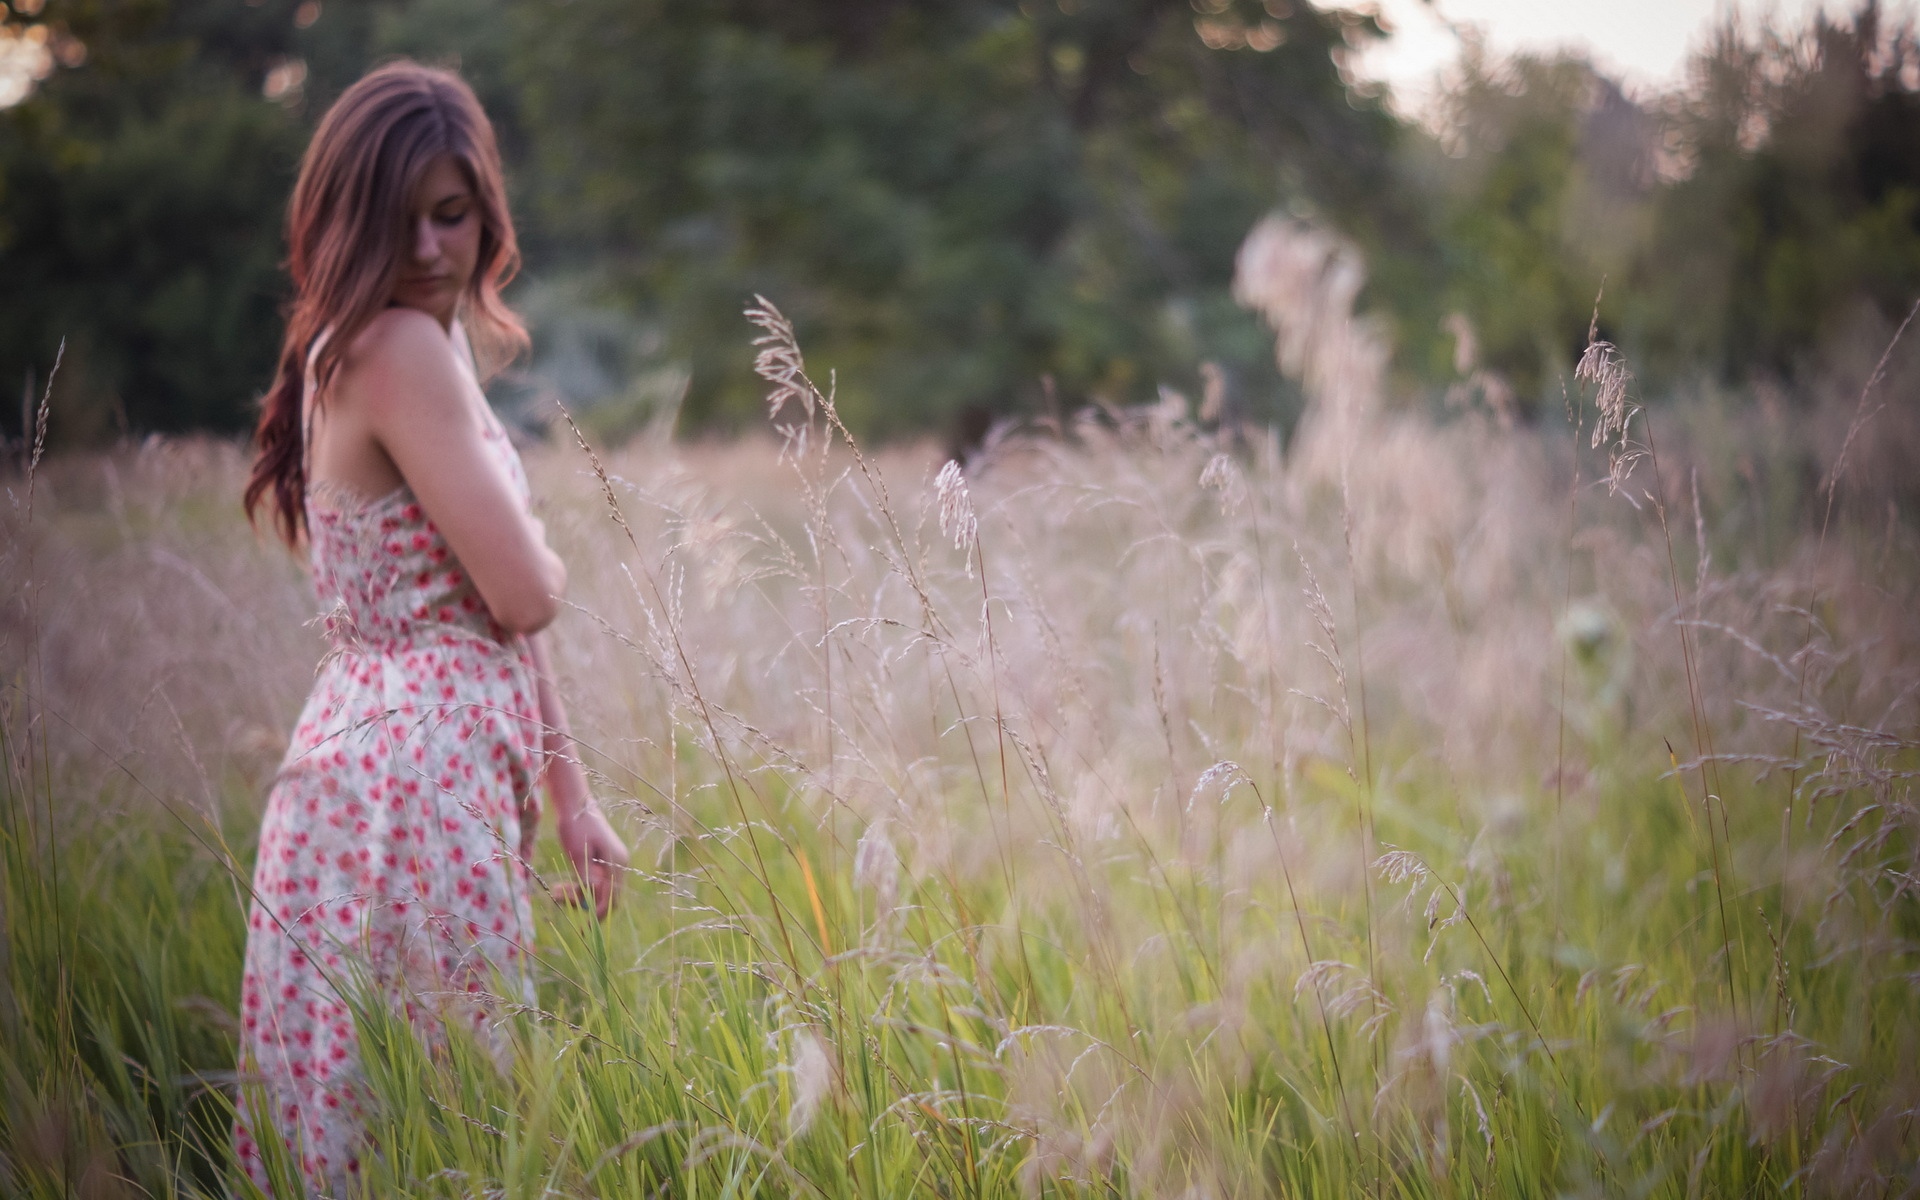 Natural woman video. Девушка в поле. Девушка на лугу. Фотосессия в поле летом. Женщина танцует в поле.